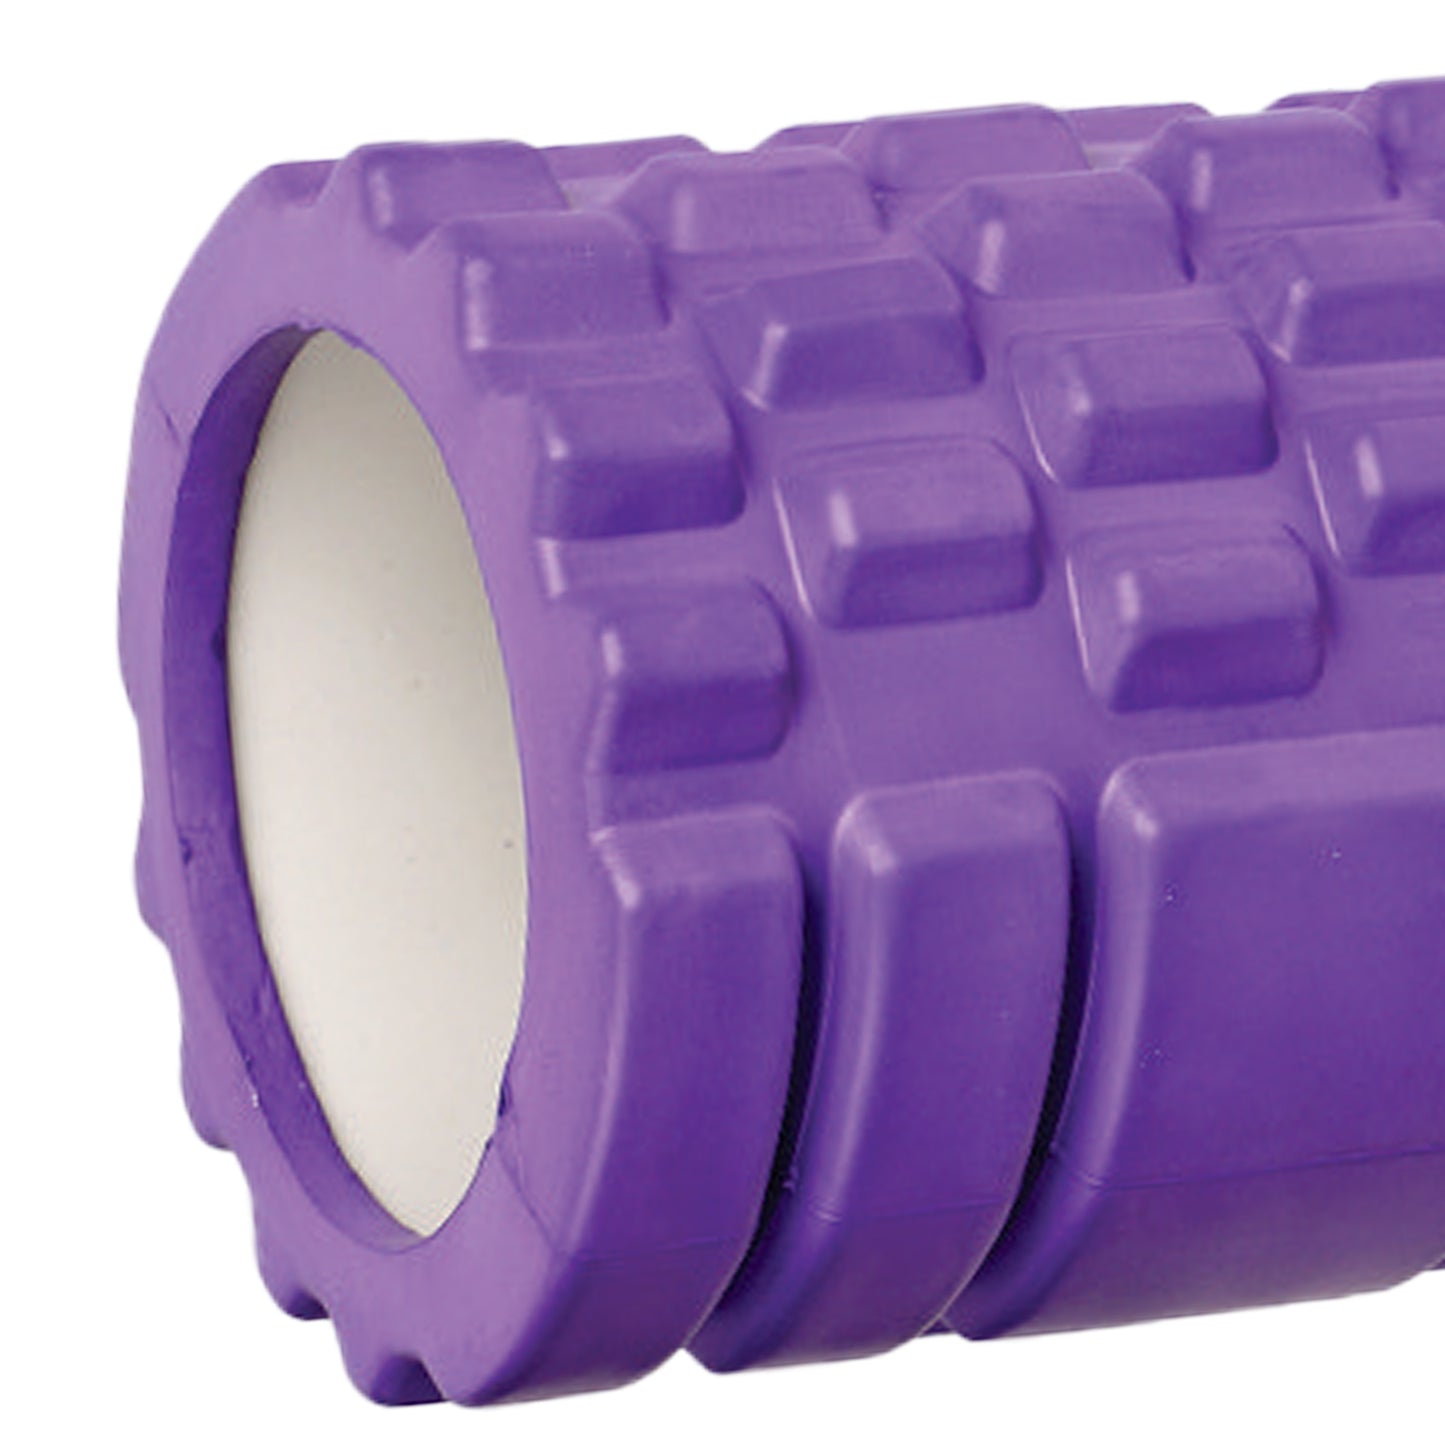 Yoga Foam roller Plain images purple